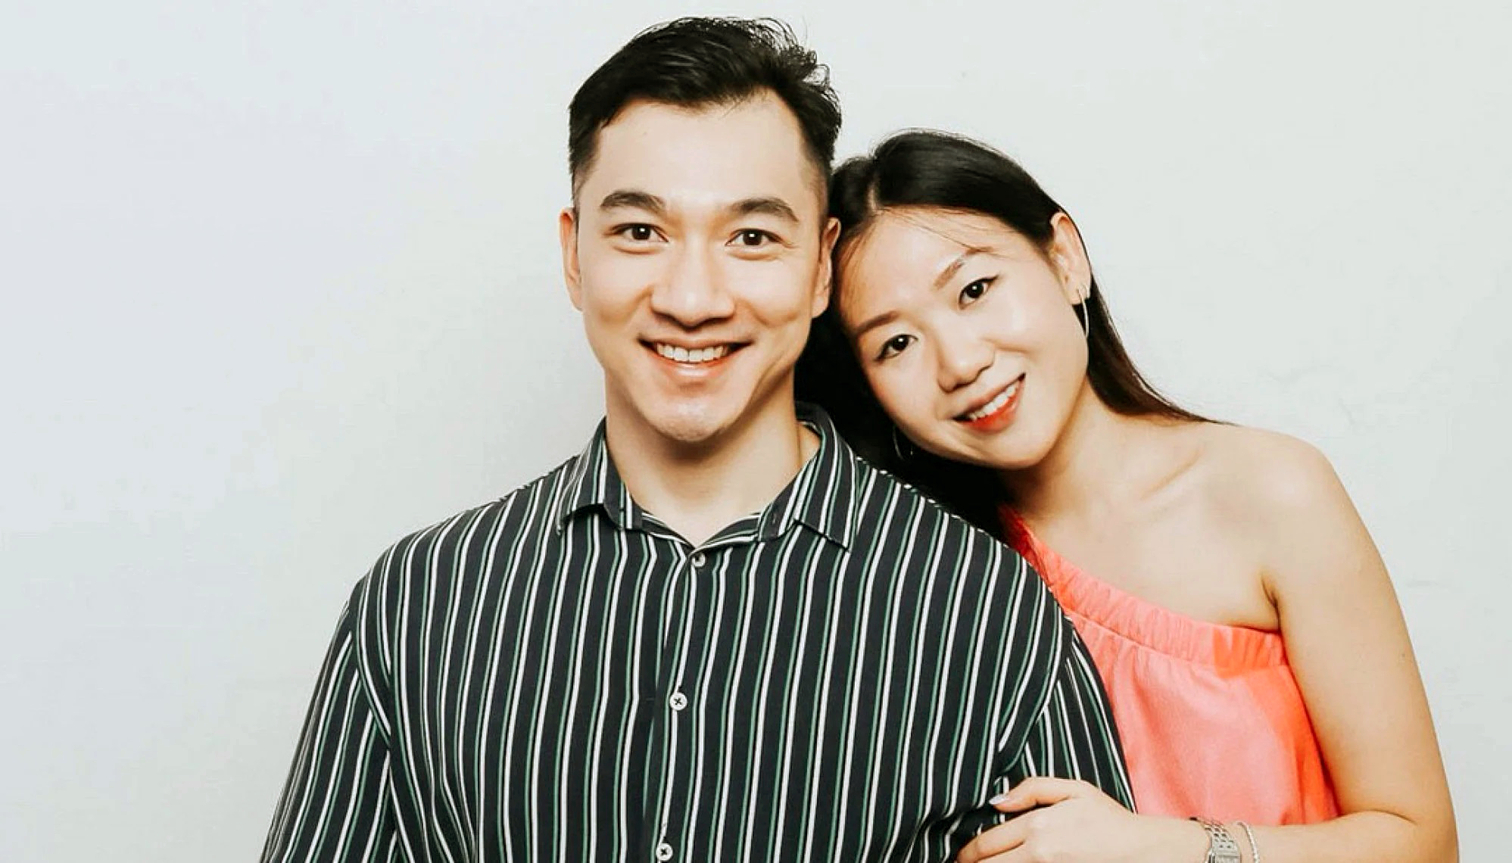 Corinne Chow và Ryan Tan (Singapore) đã đăng video lên TikTok chia sẻ về 1 ngày trong cuộc sống của họ với tư cách là cặp đôi DINK - Nguồn ảnh: SCMP/HANDOUT